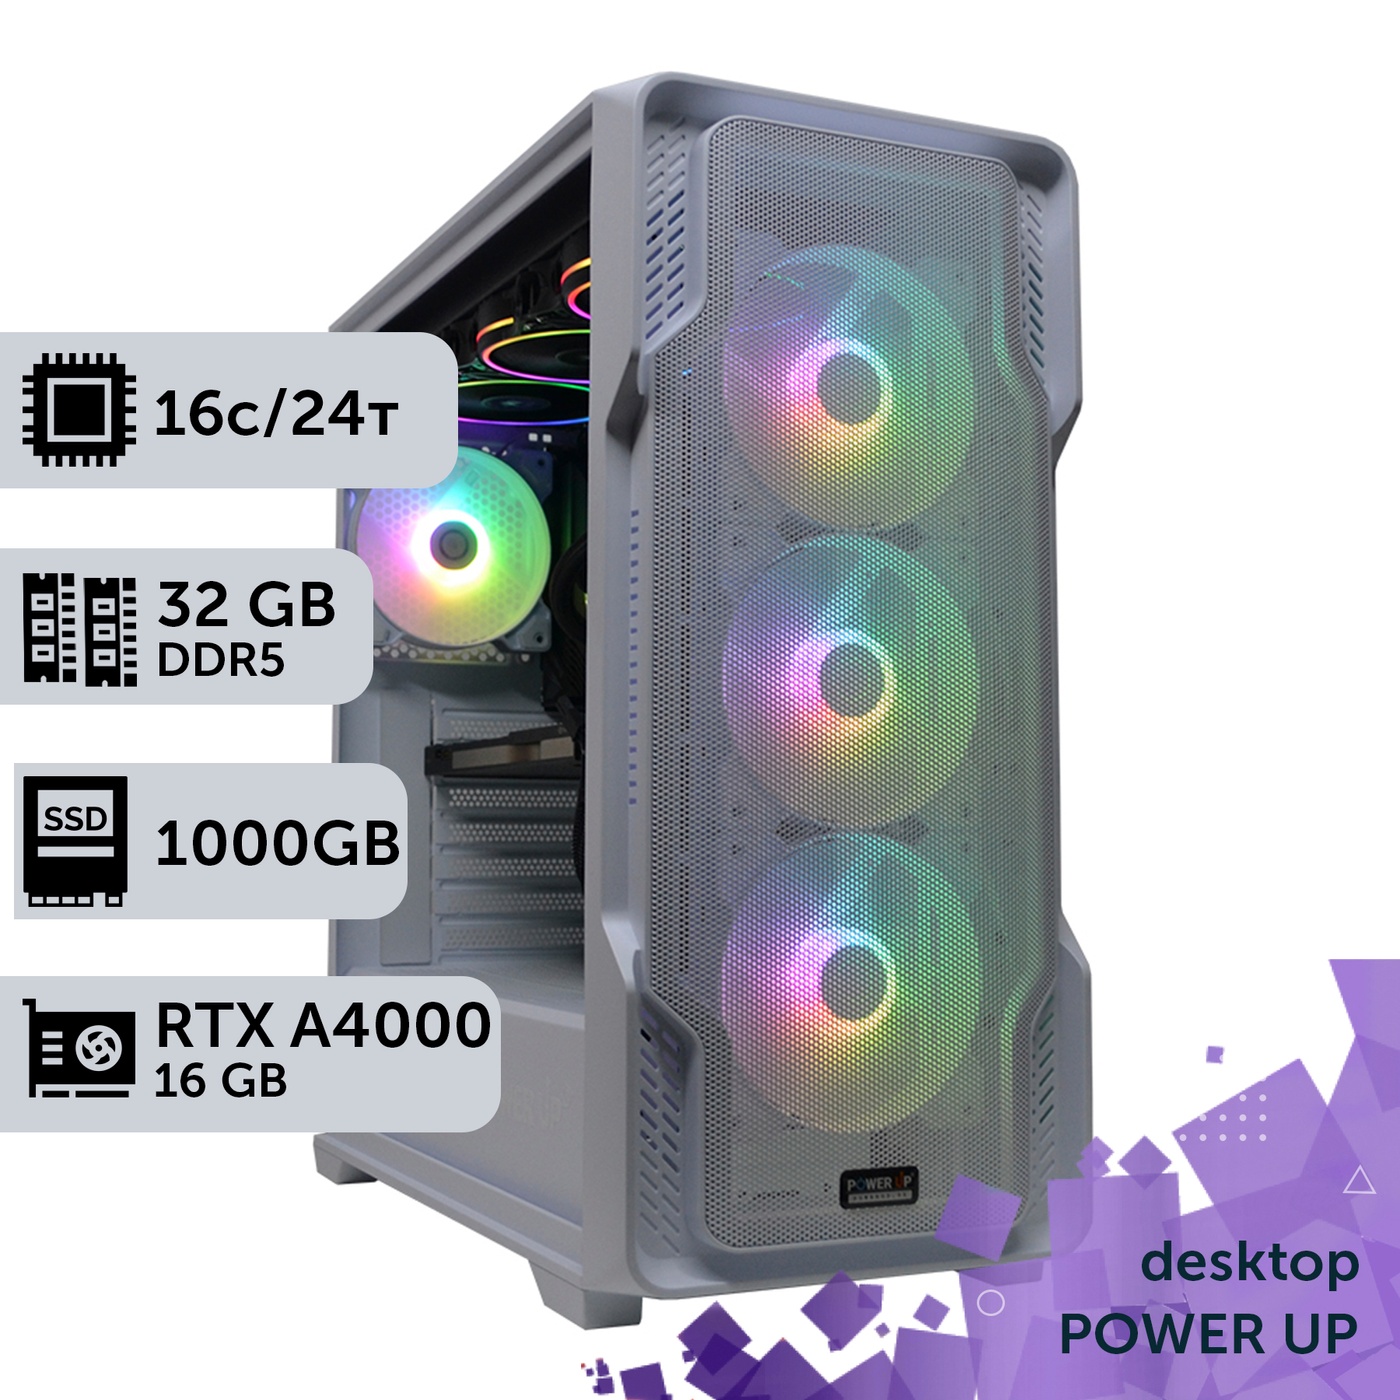 Рабочая станция PowerUp Desktop #245 Core i7 13700K/32 GB/SSD 1TB/NVIDIA Quadro RTX A4000 16GB